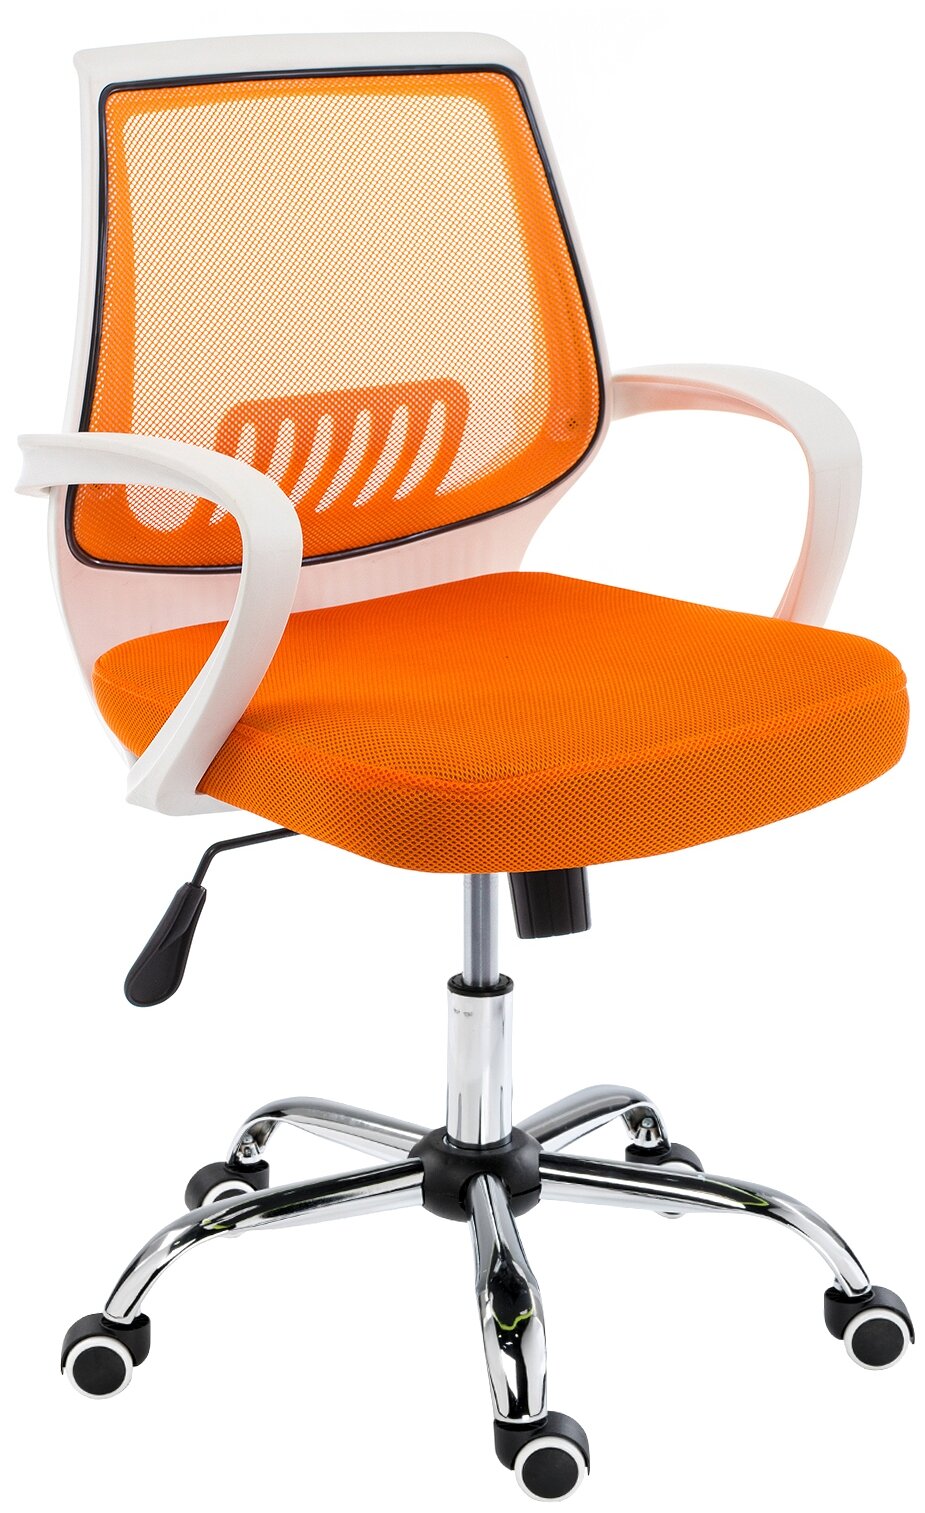 Компьютерное кресло Woodville Ergoplus низкая спинка офисное, обивка: текстиль, цвет: white plastic / orange